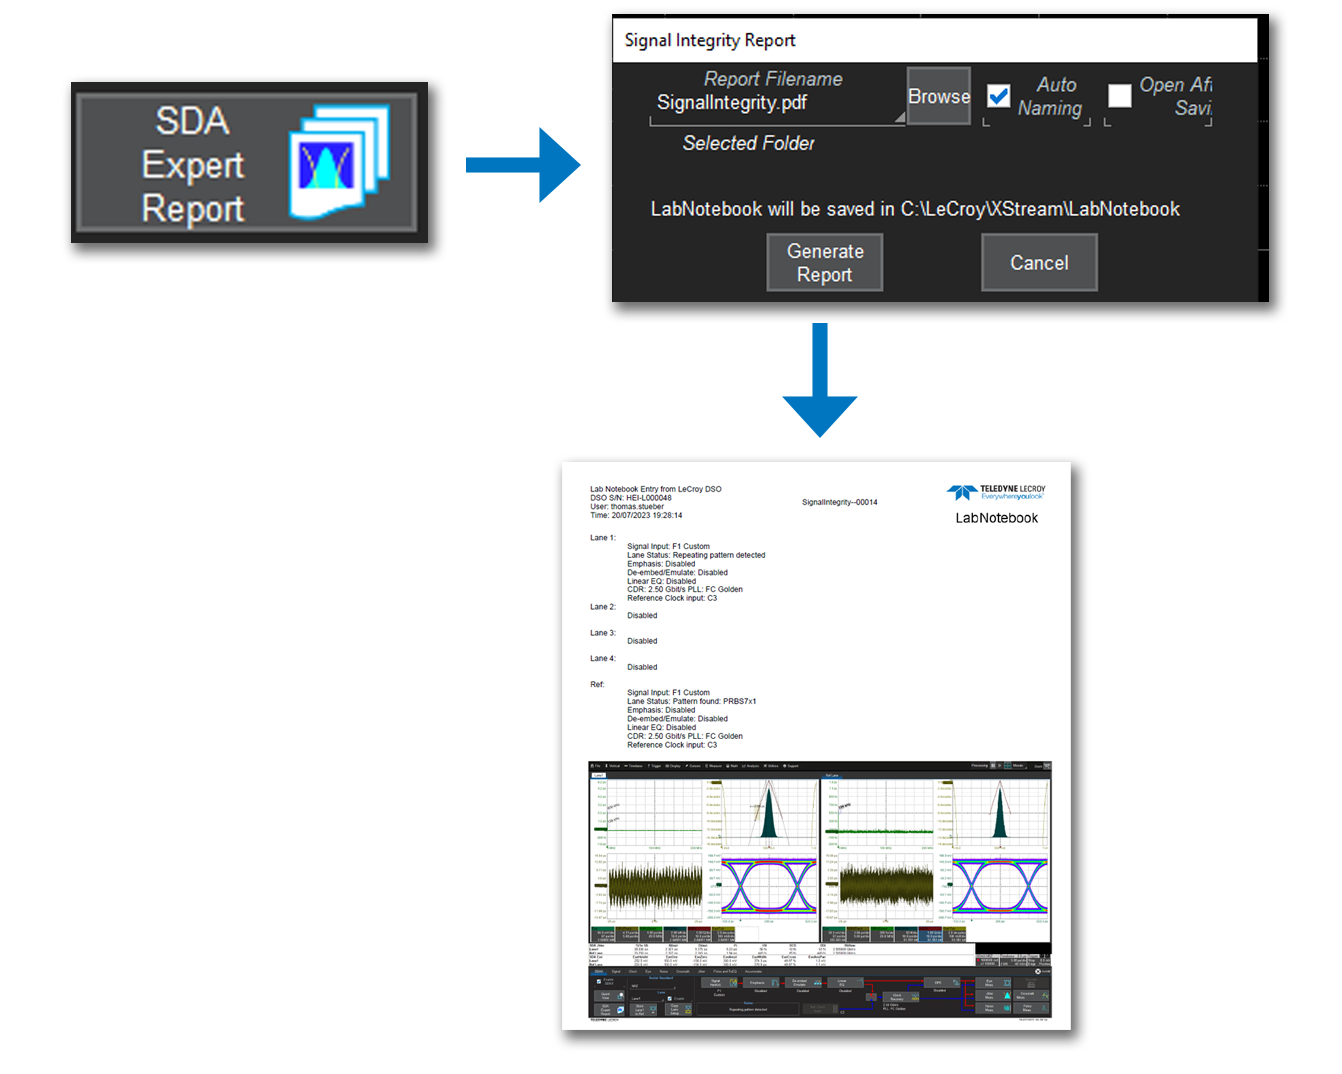 SDA Expert 串行数据分析软件具有内置报告功能，只需按一下按钮即可保存设置、原始数据和报告，以便对 NRZ 和 PAM 信号进行各种抖动和串行数据分析